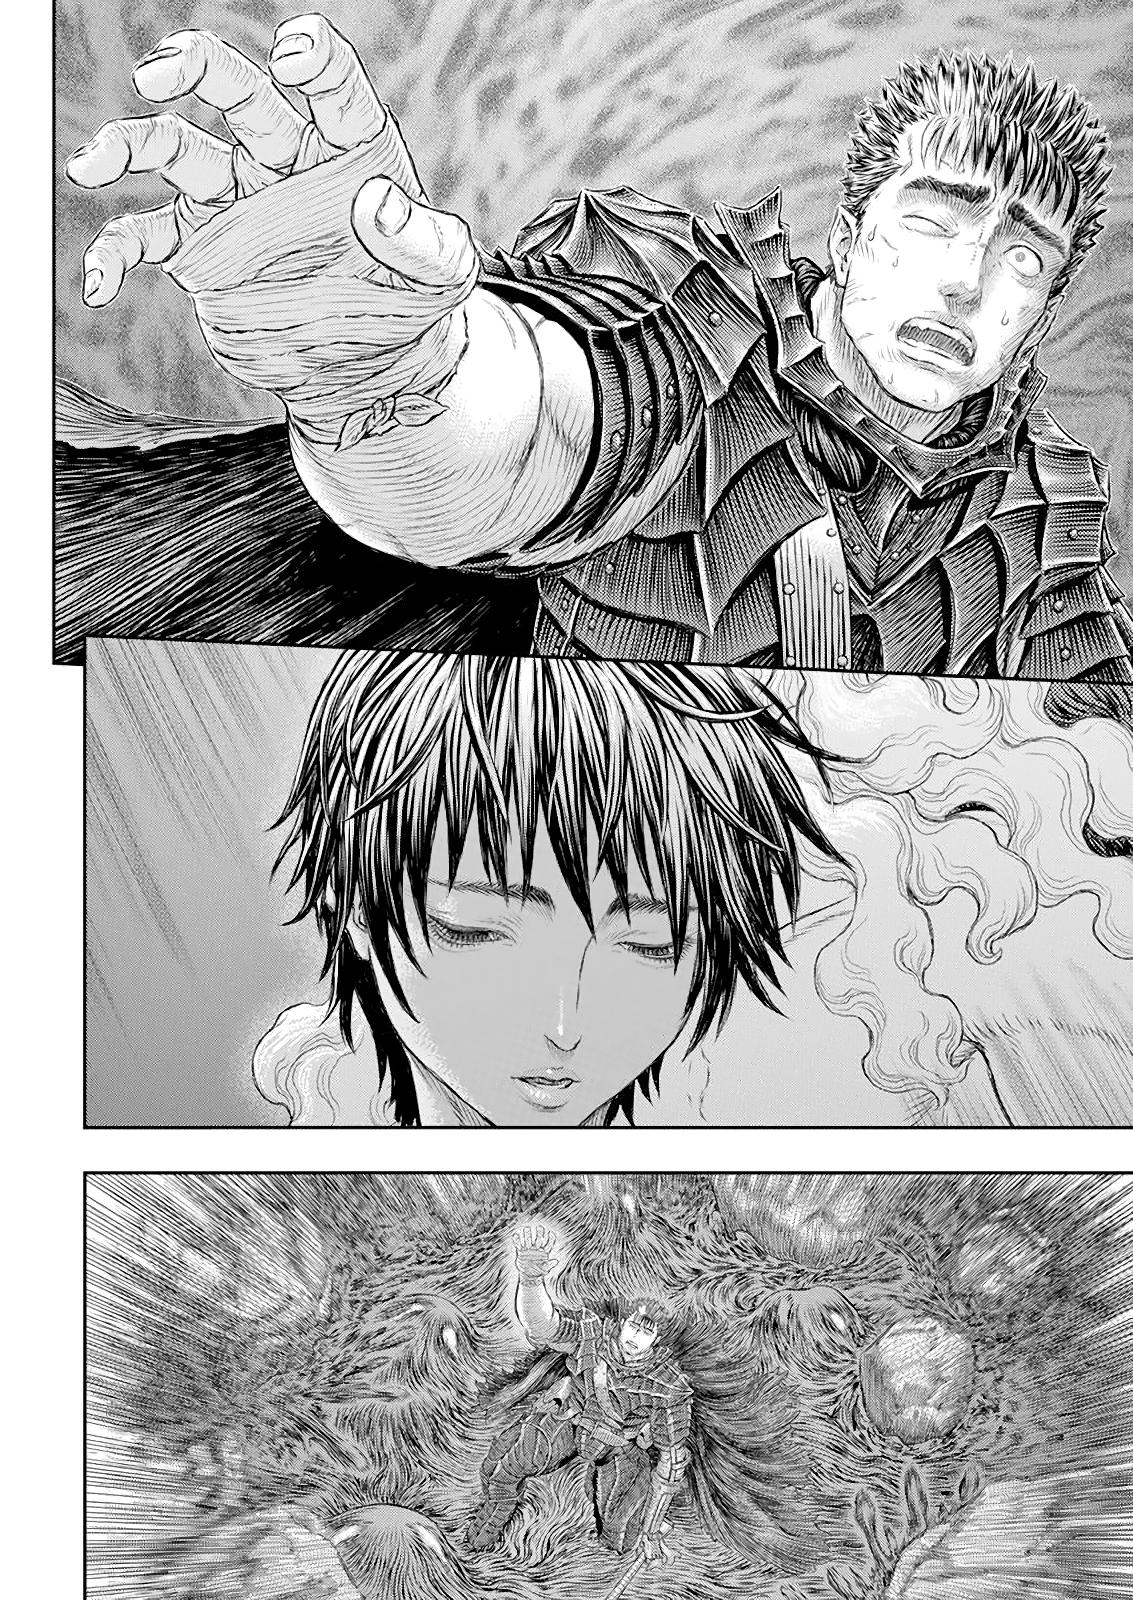 Berserk Manga Chapter 368 image 17